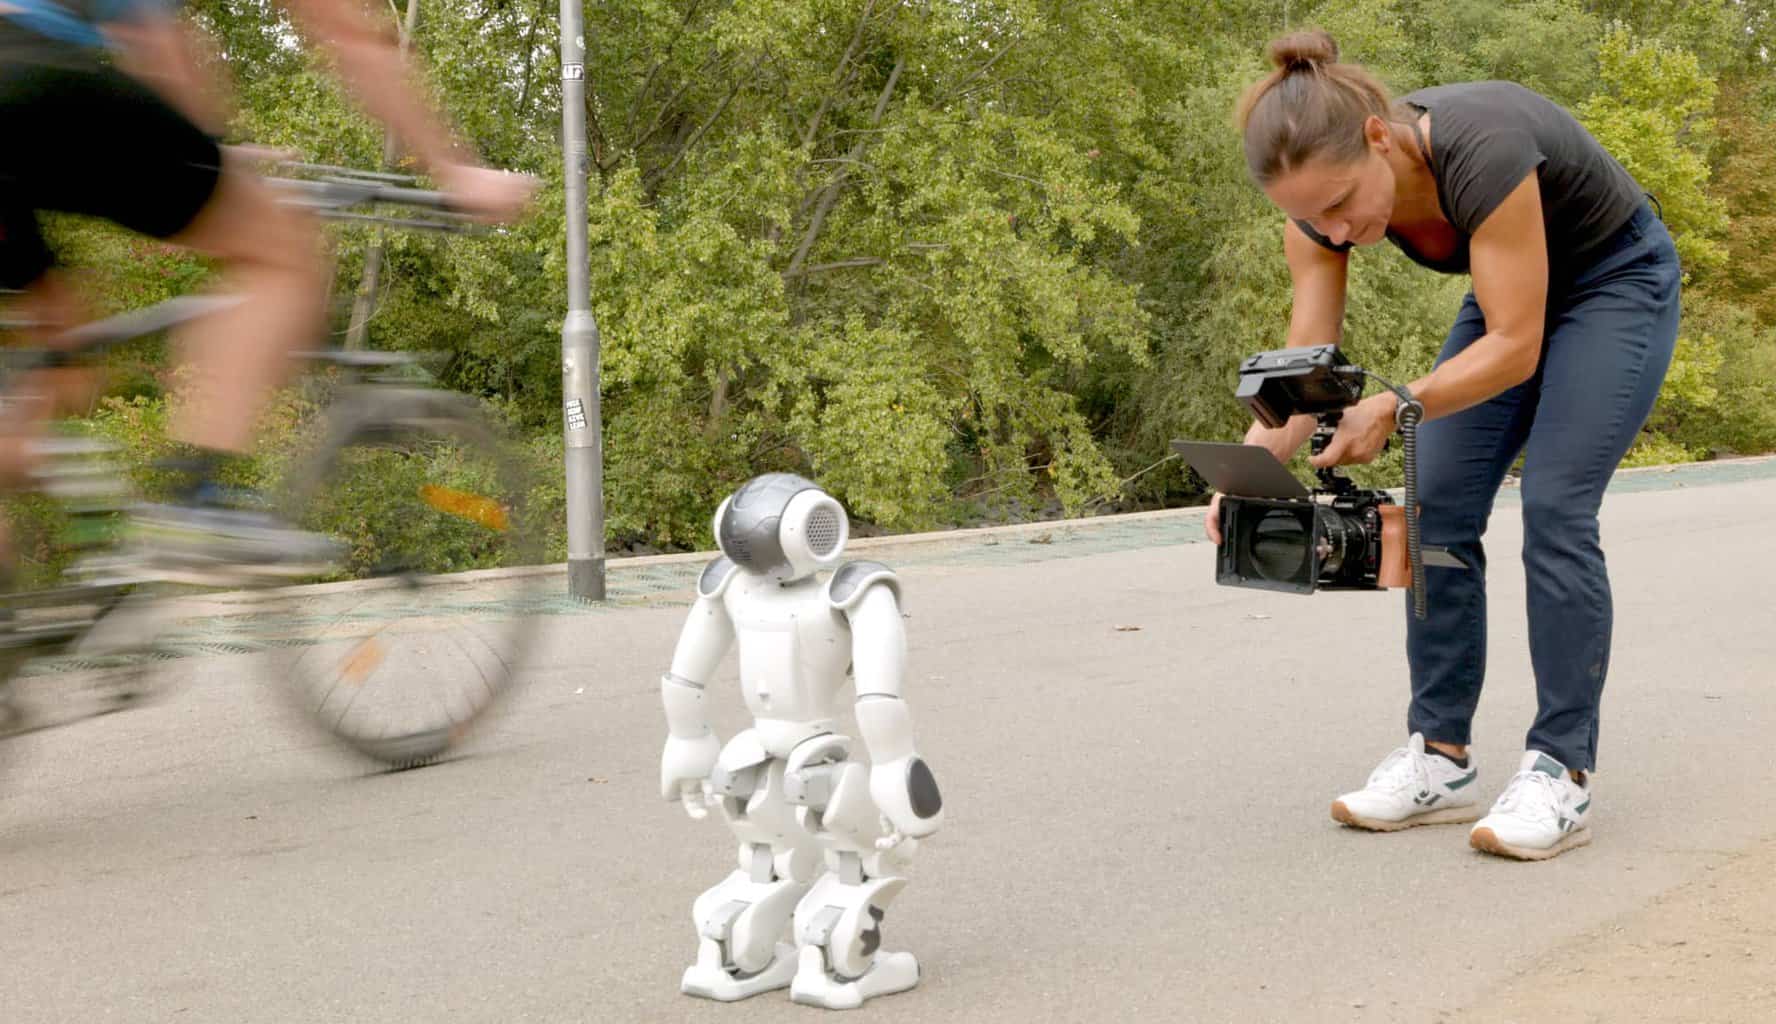 Person filmt einen etwa 50 cm hohen Roboter, der auf sie zufäuft